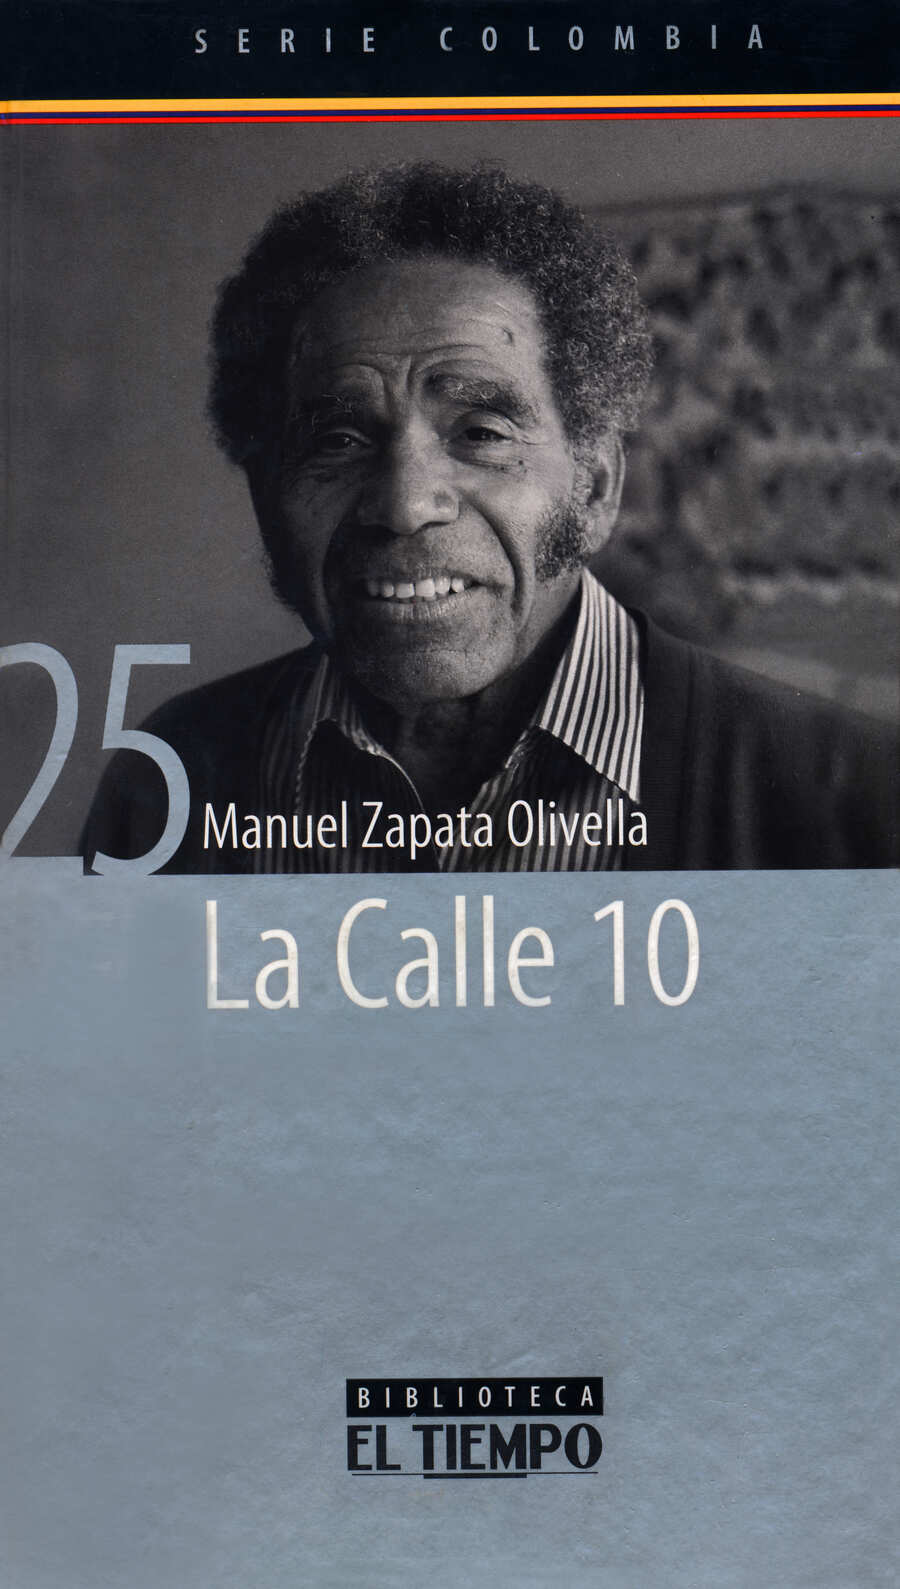 Cubierta del libro La calle 10, edición por la Casa Editorial El Tiempo publicada en 2003 en la Serie Colombia.  